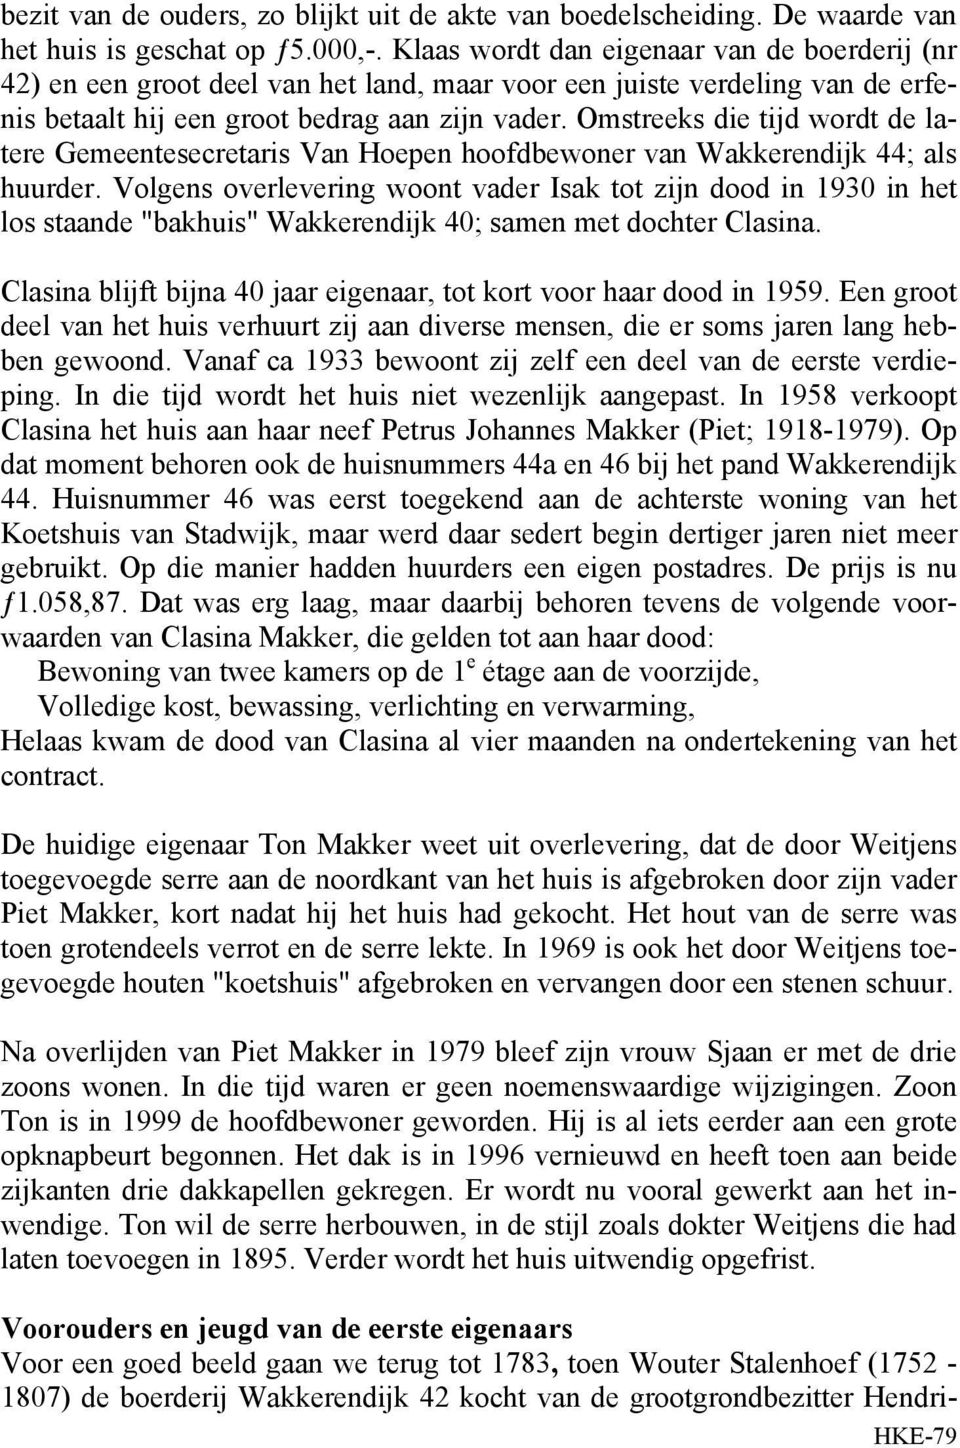 Omstreeks die tijd wordt de latere Gemeentesecretaris Van Hoepen hoofdbewoner van Wakkerendijk 44; als huurder.